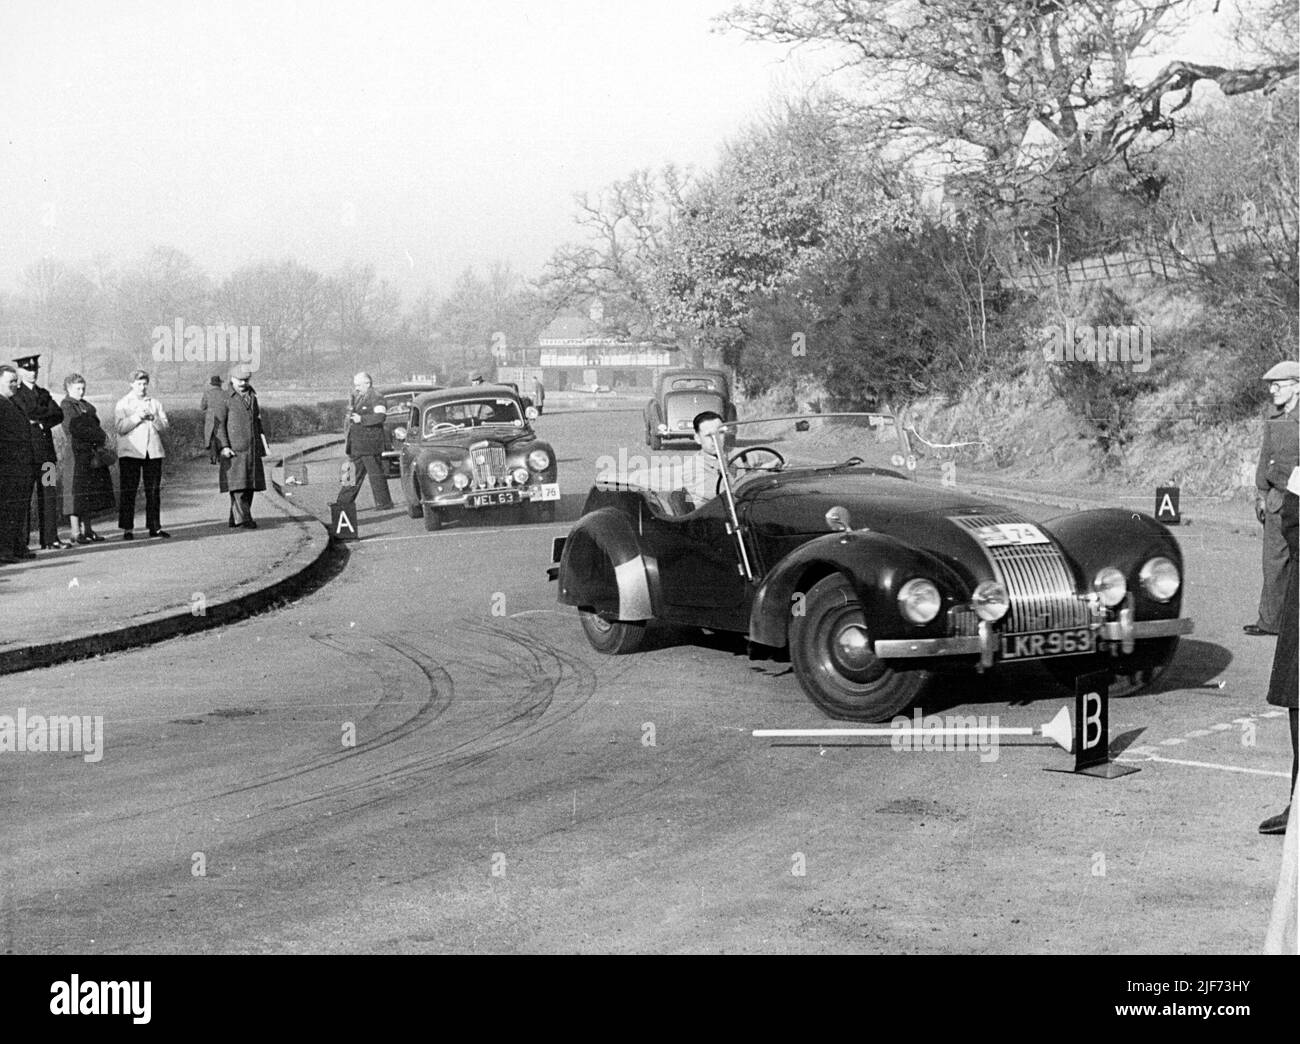 1949 Allard L TYPE en el Rally Internacional RAC 23/3/53 Foto de stock